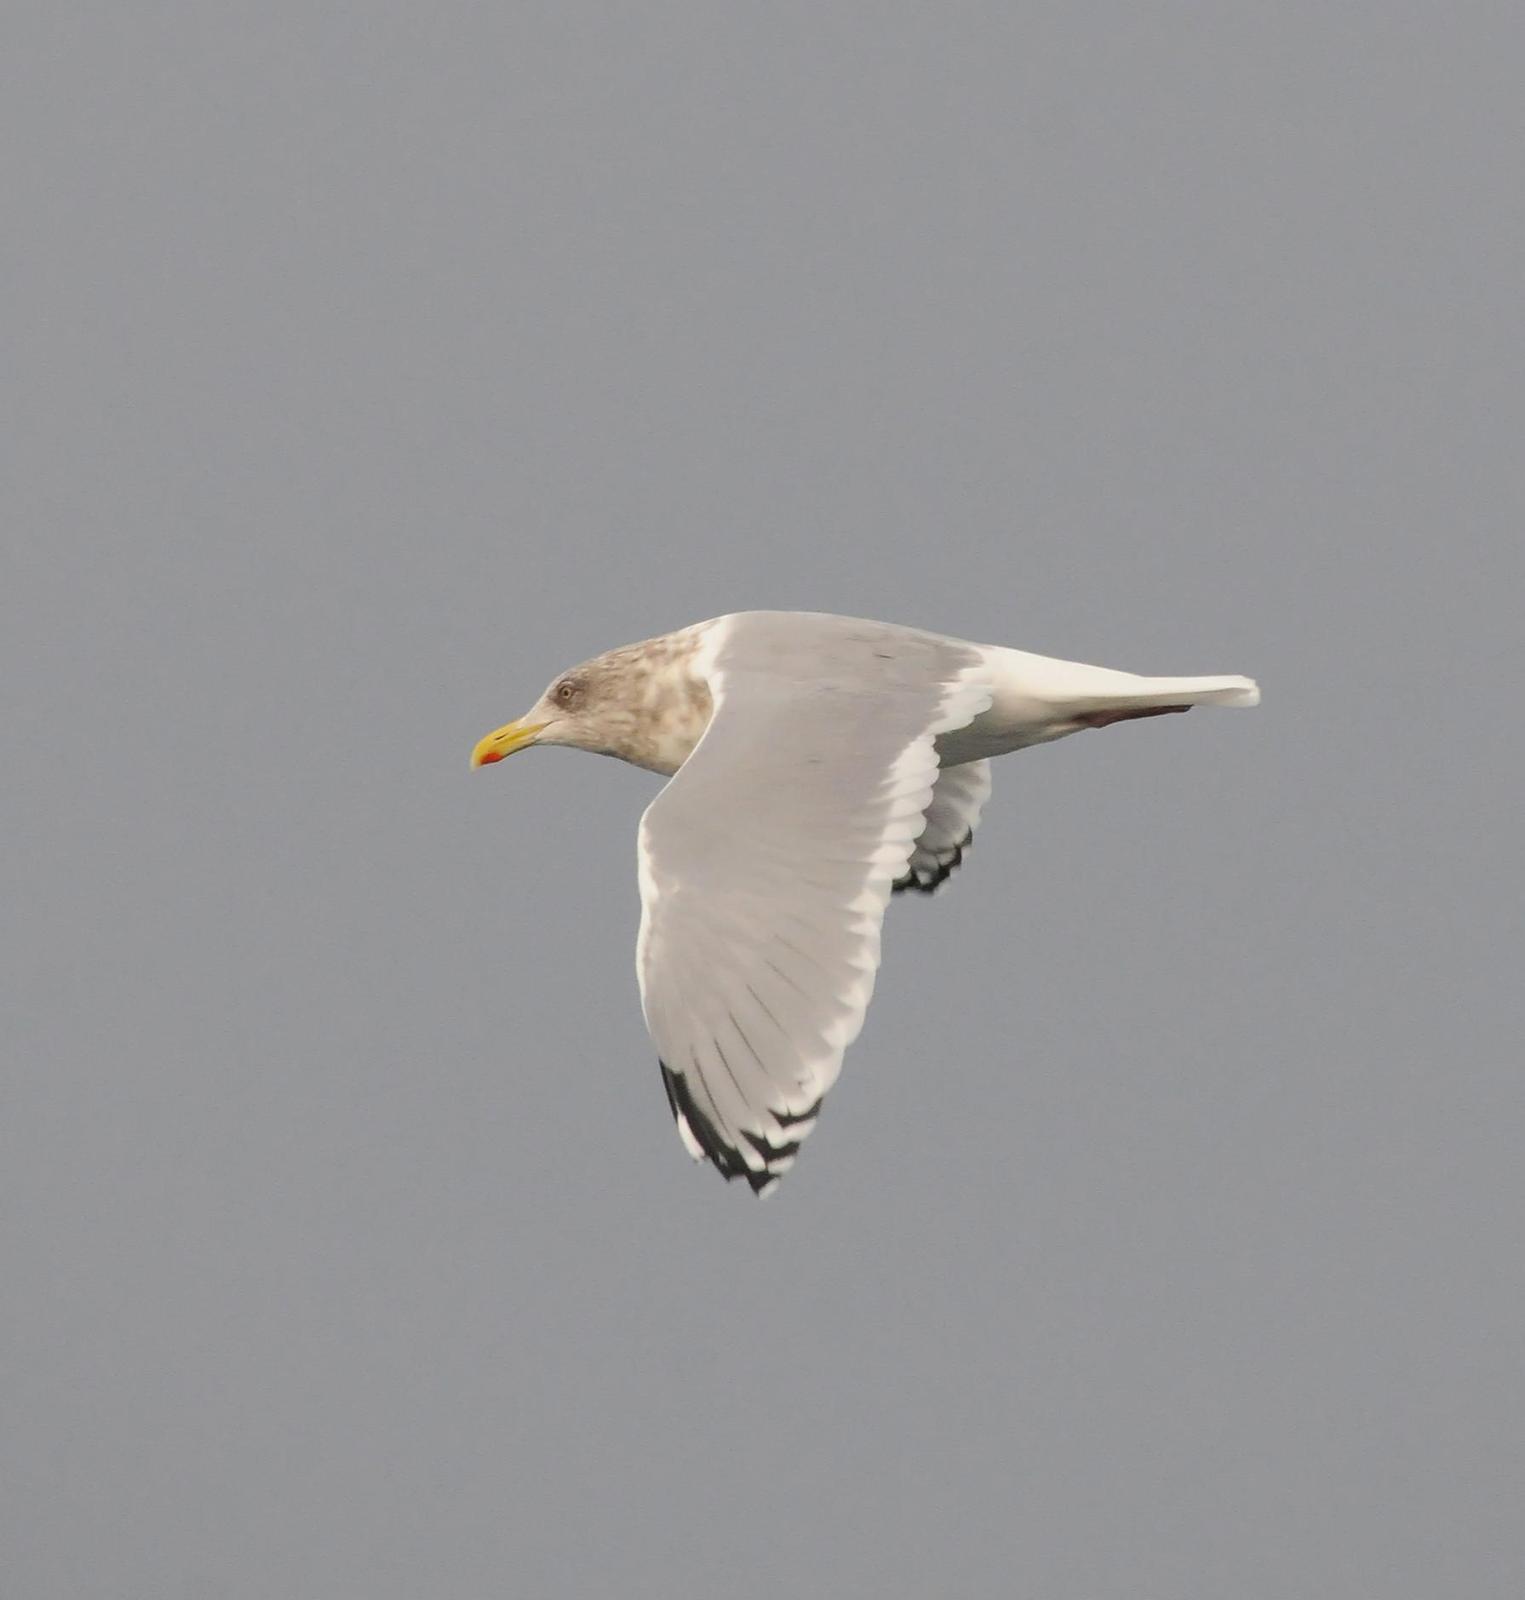 Herring x Glaucous-winged Gull (hybrid) Photo by Steven Mlodinow